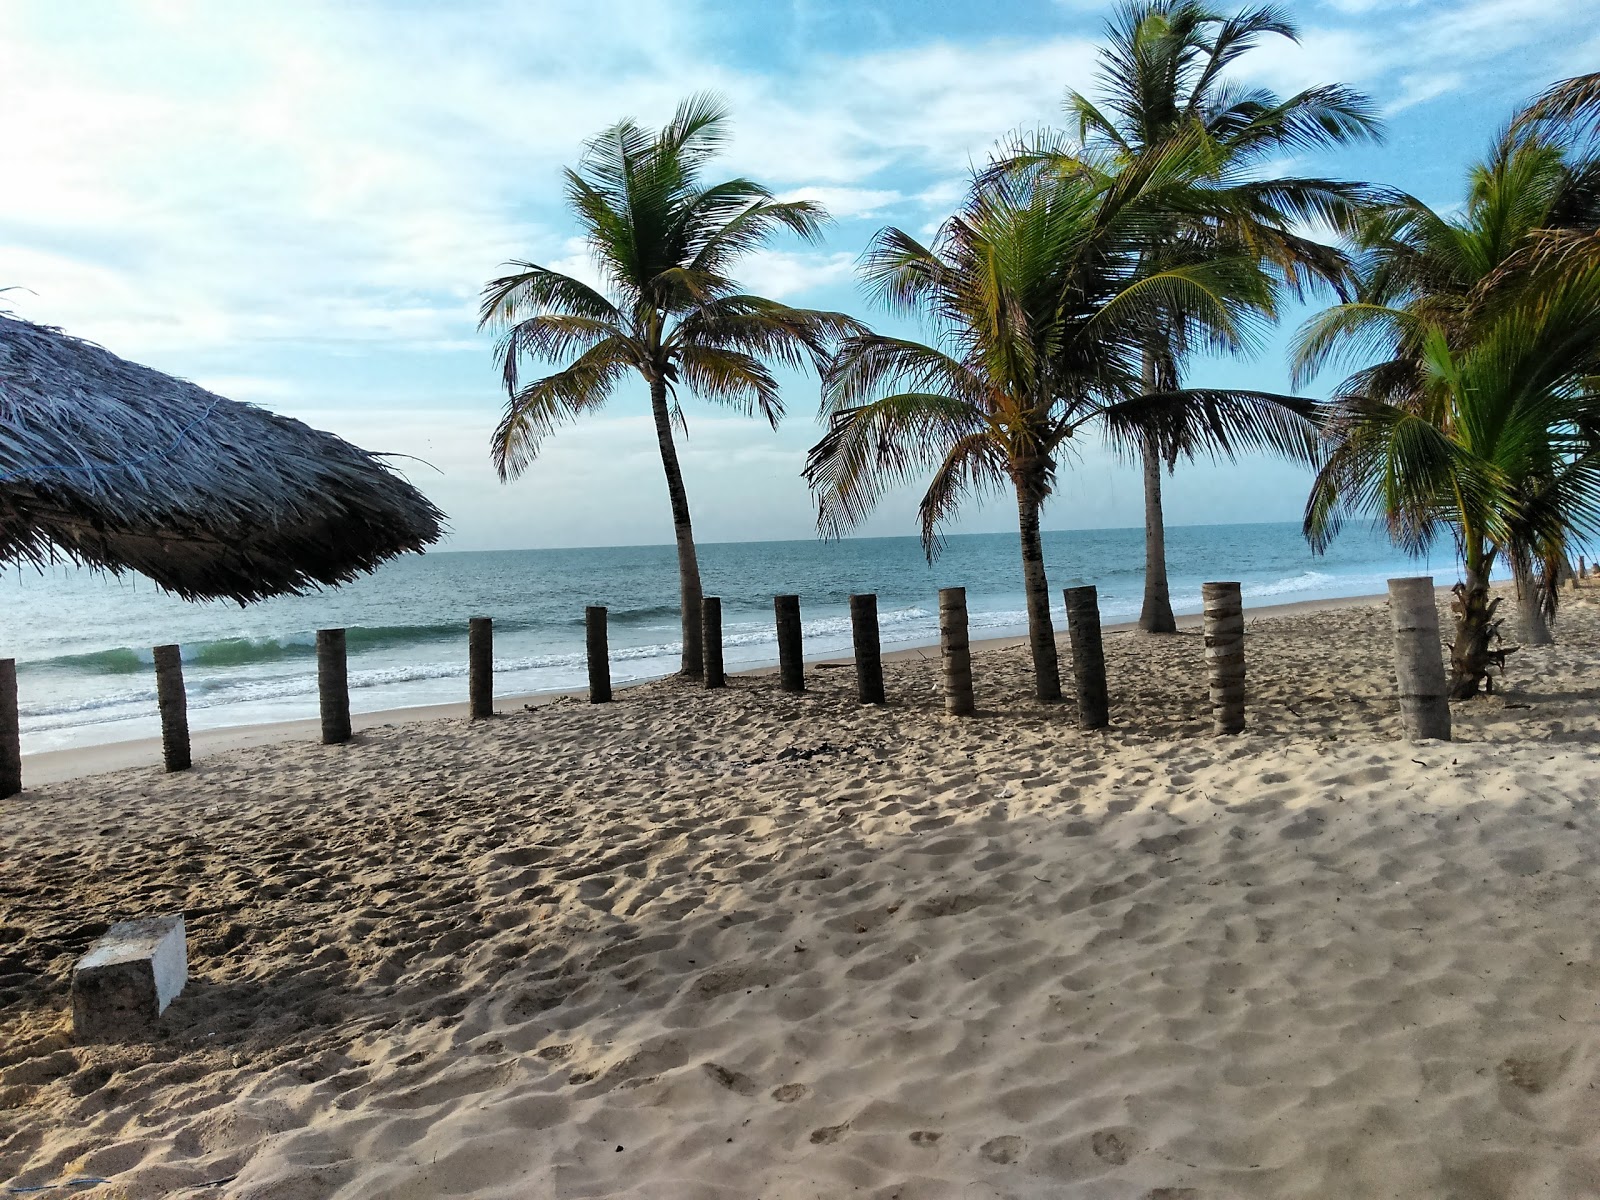 Fotografie cu Praia do Miai de Cima - locul popular printre cunoscătorii de relaxare